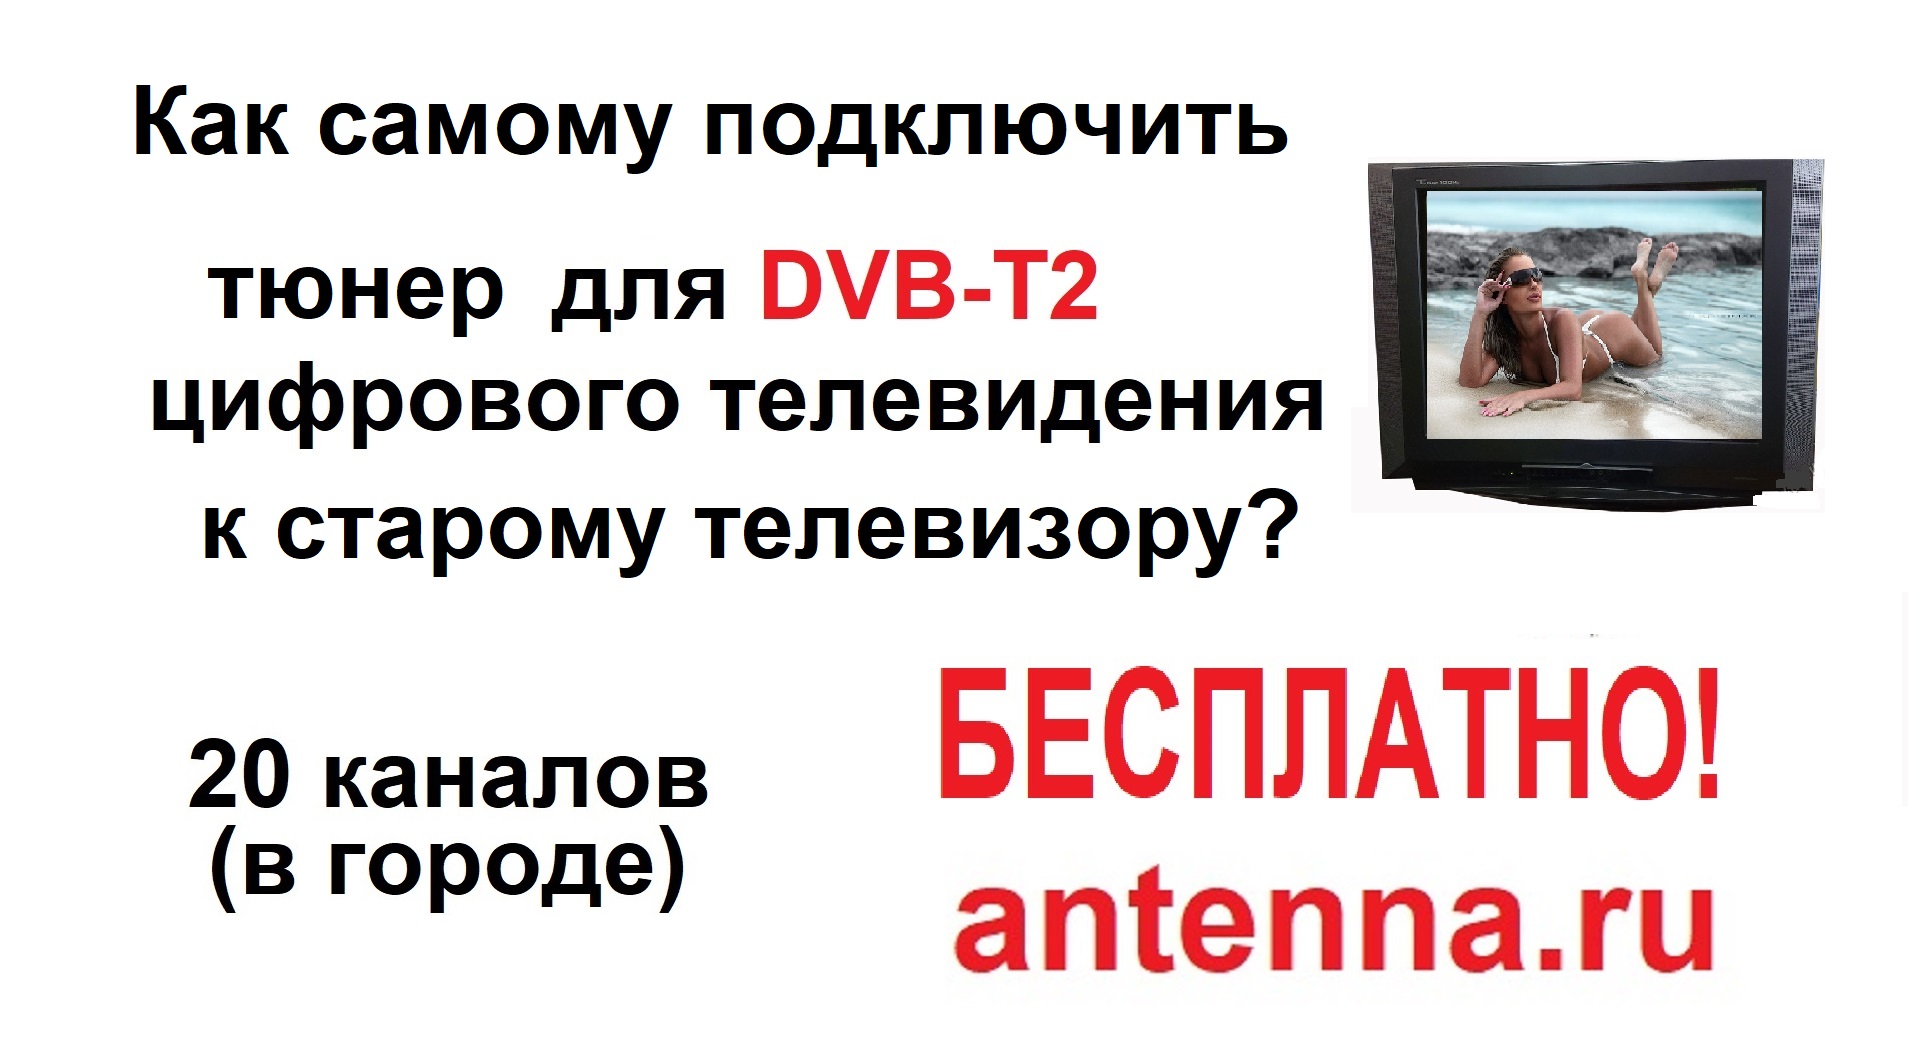 Стандарты цифрового телевидения DVB